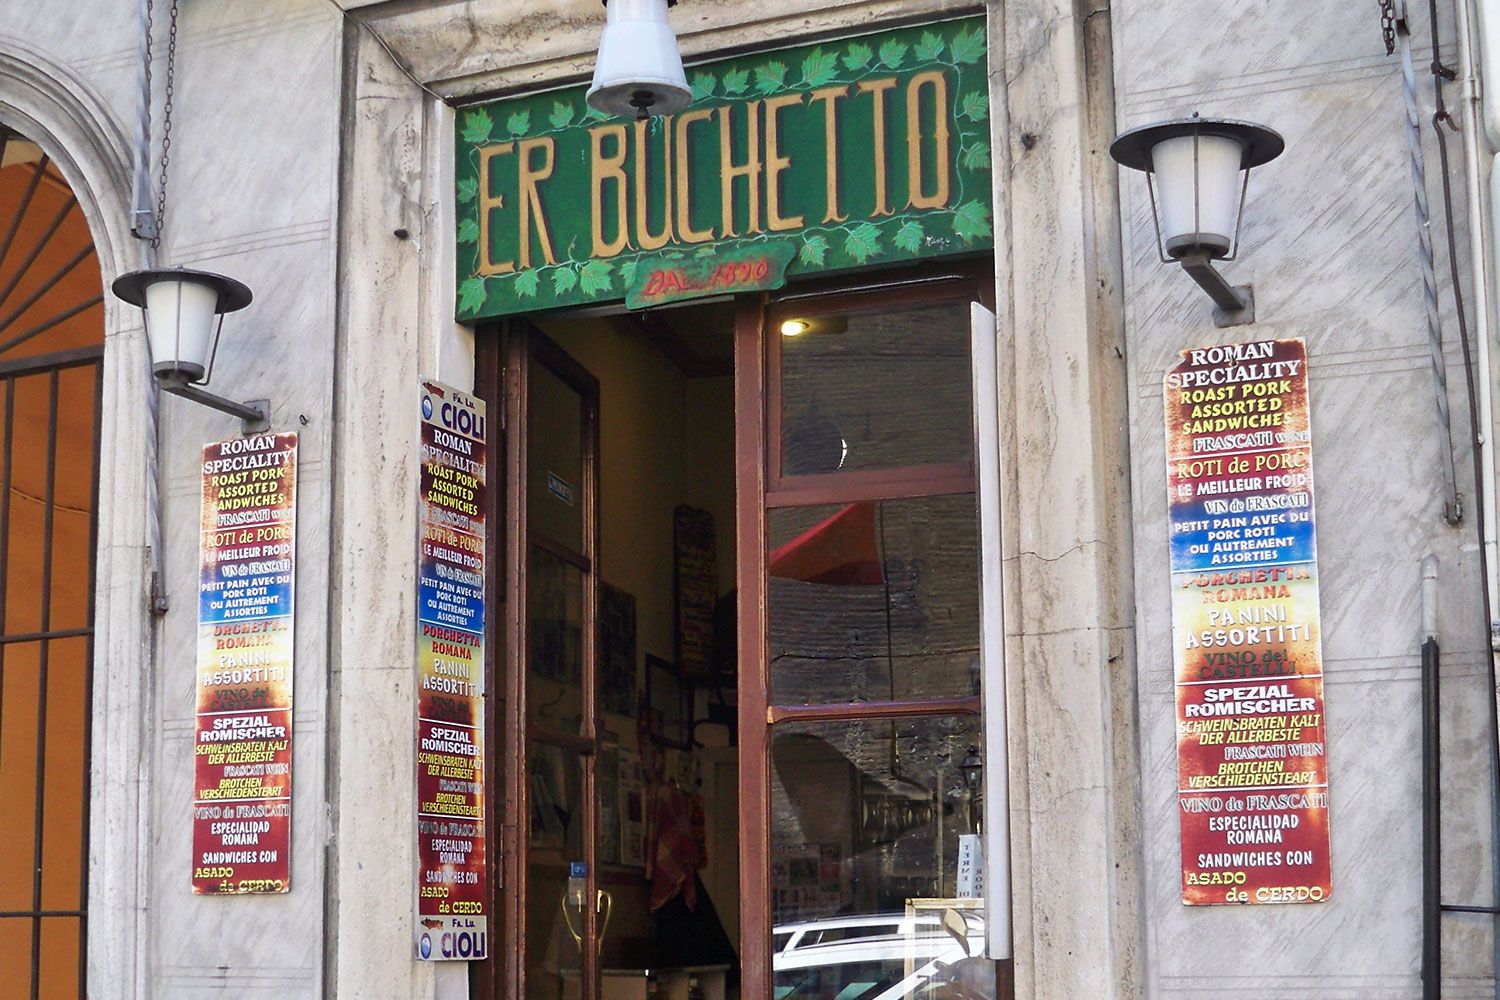 Er Buchetto in Rome